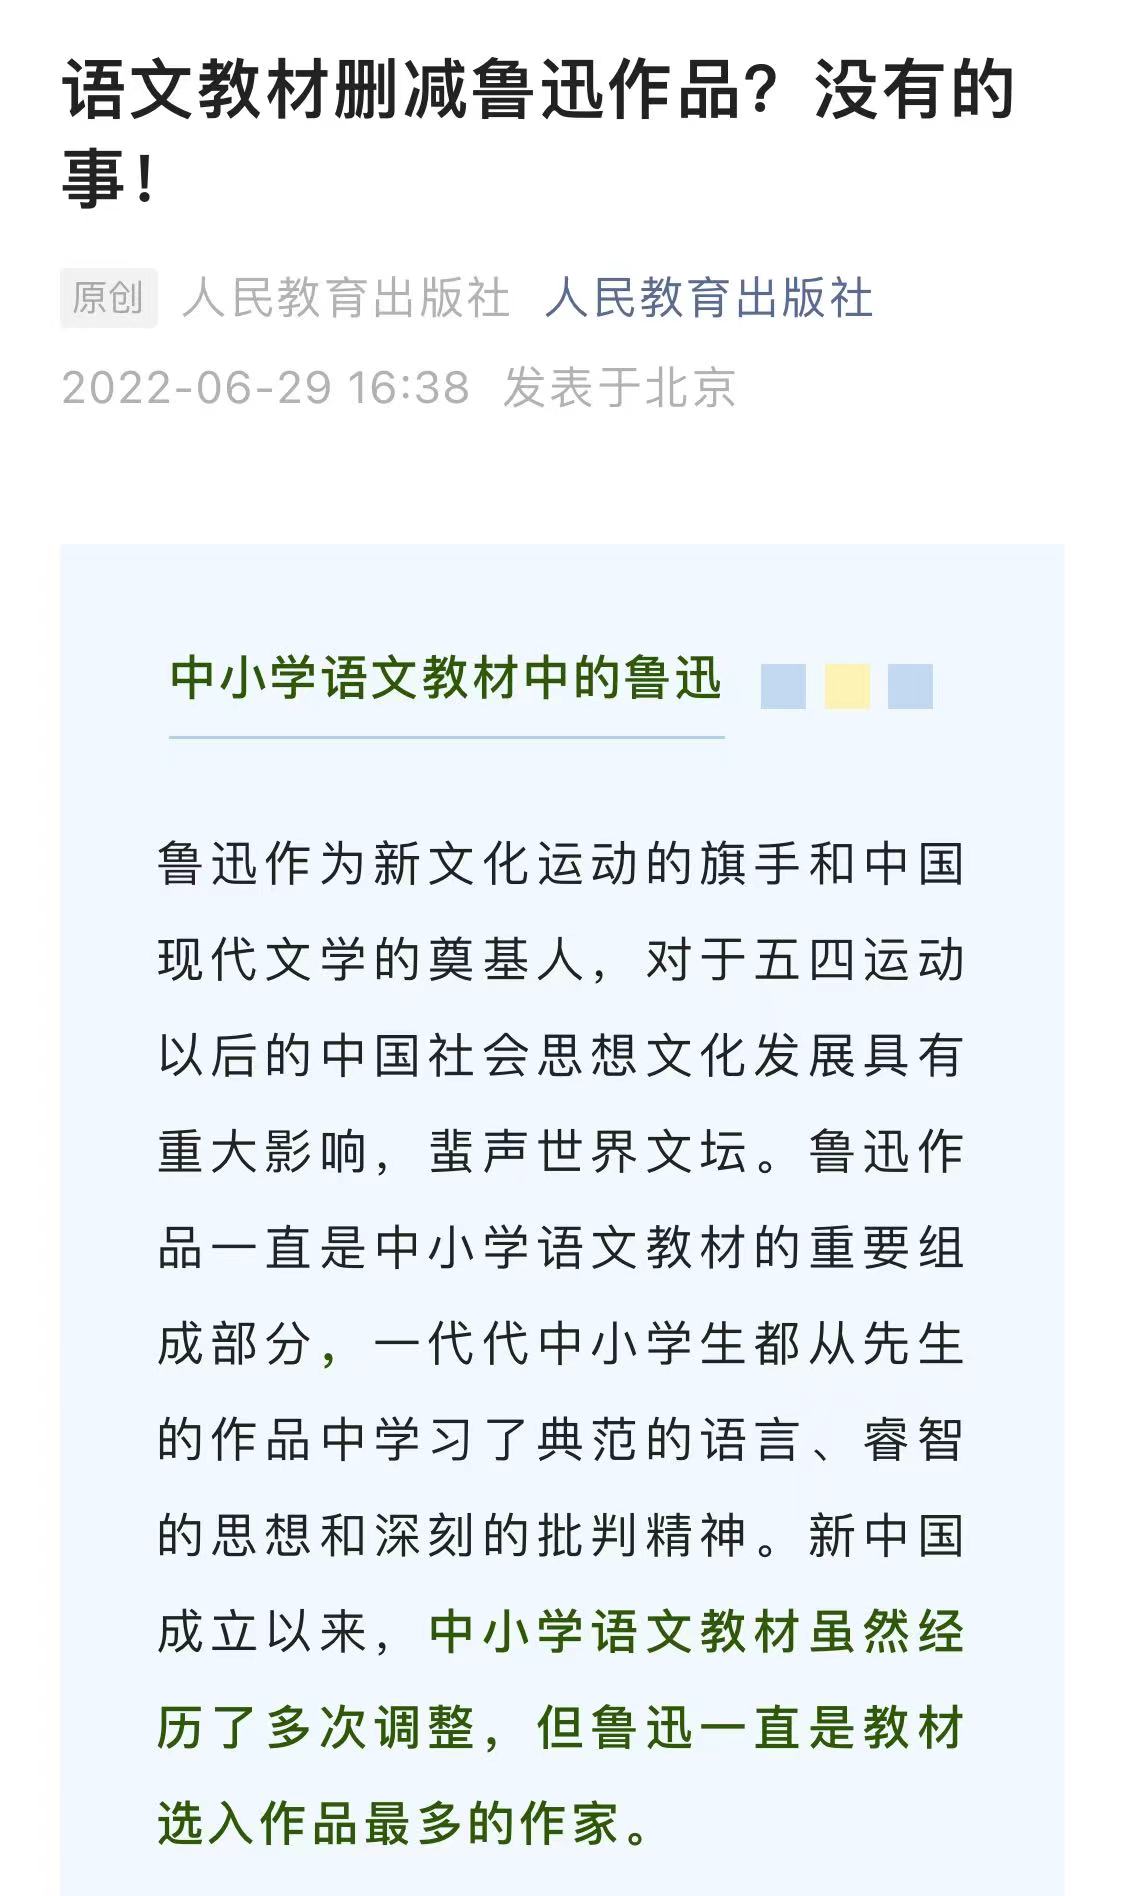 上海市客运站自14日起将全部暂停营运 - World Cup News - World Cup 2022 百度热点快讯